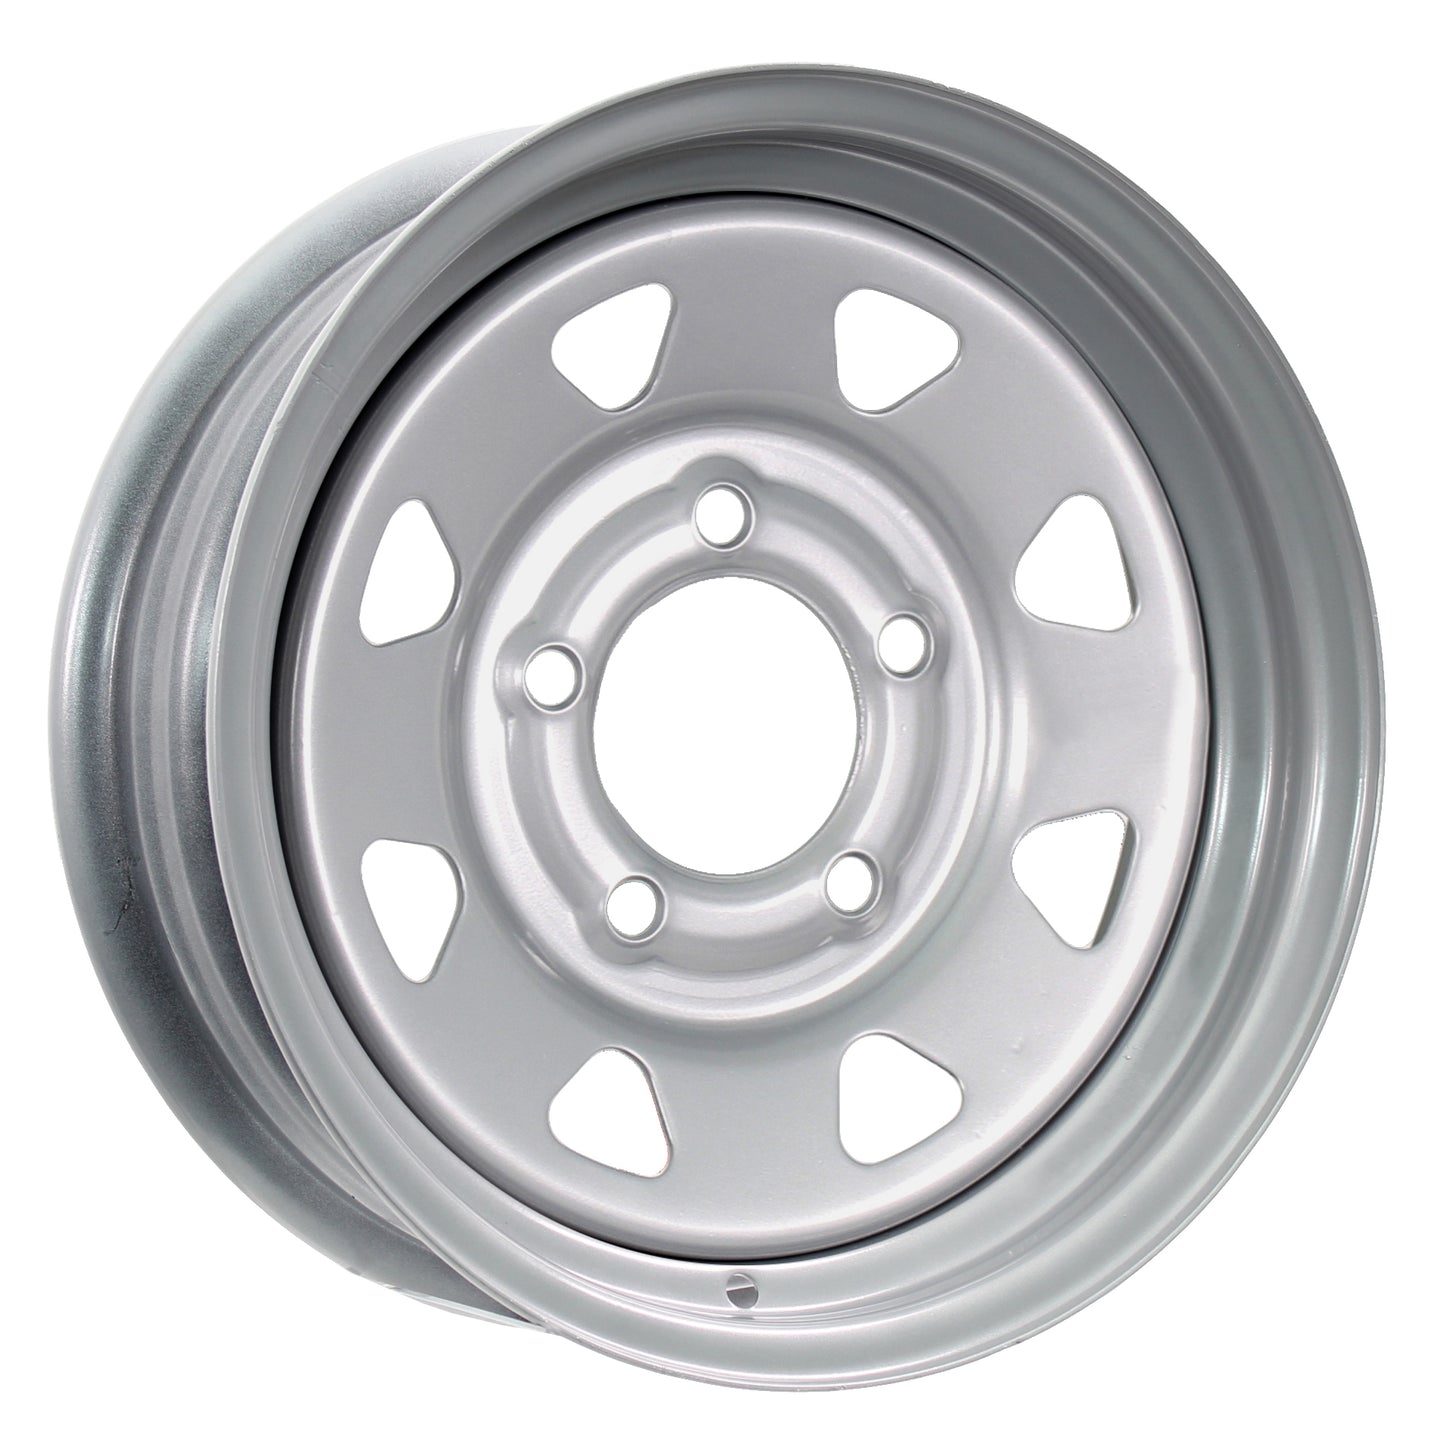 Trailer Wheel Rim 14X5.5 5-4.5 Silver Spoke 2200 Lb. 3.19 Center Bore 75PSI